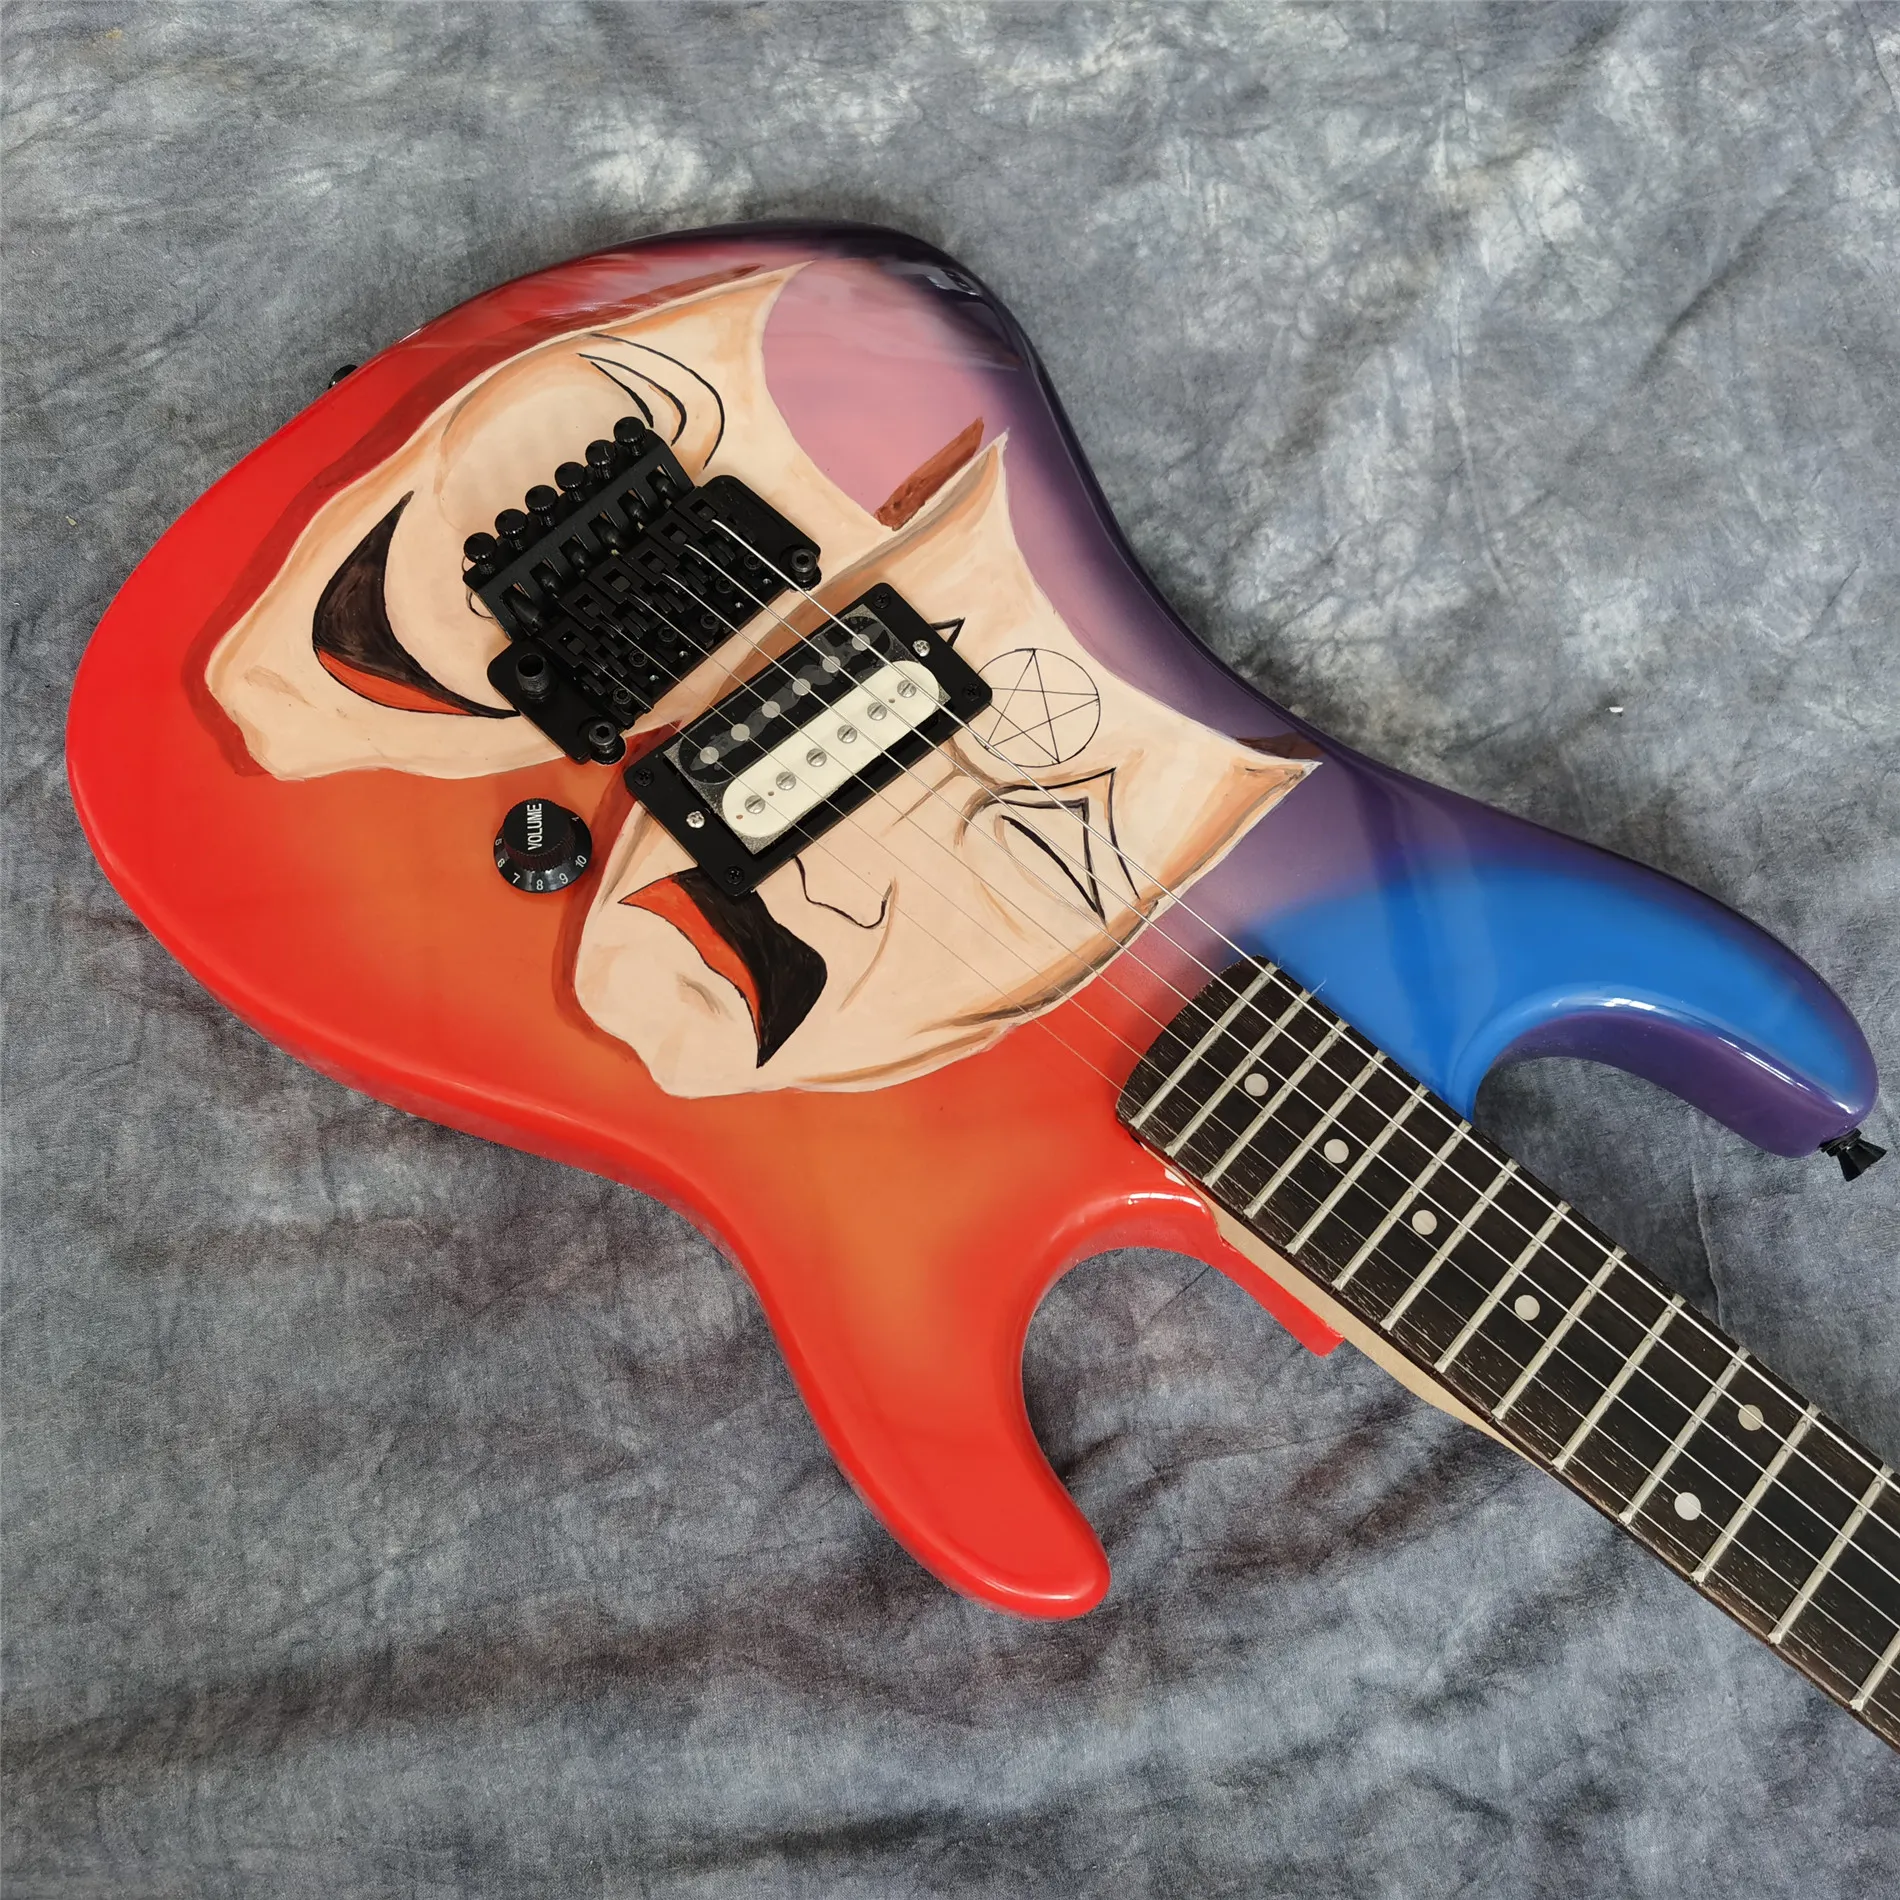 スーパーレアハンドワークモトレークリスクラゲBaretta Mick Mars Theatre of Painの赤紫色のエレクトリックギターフロイドローズトレモロ、黒いハードウェア